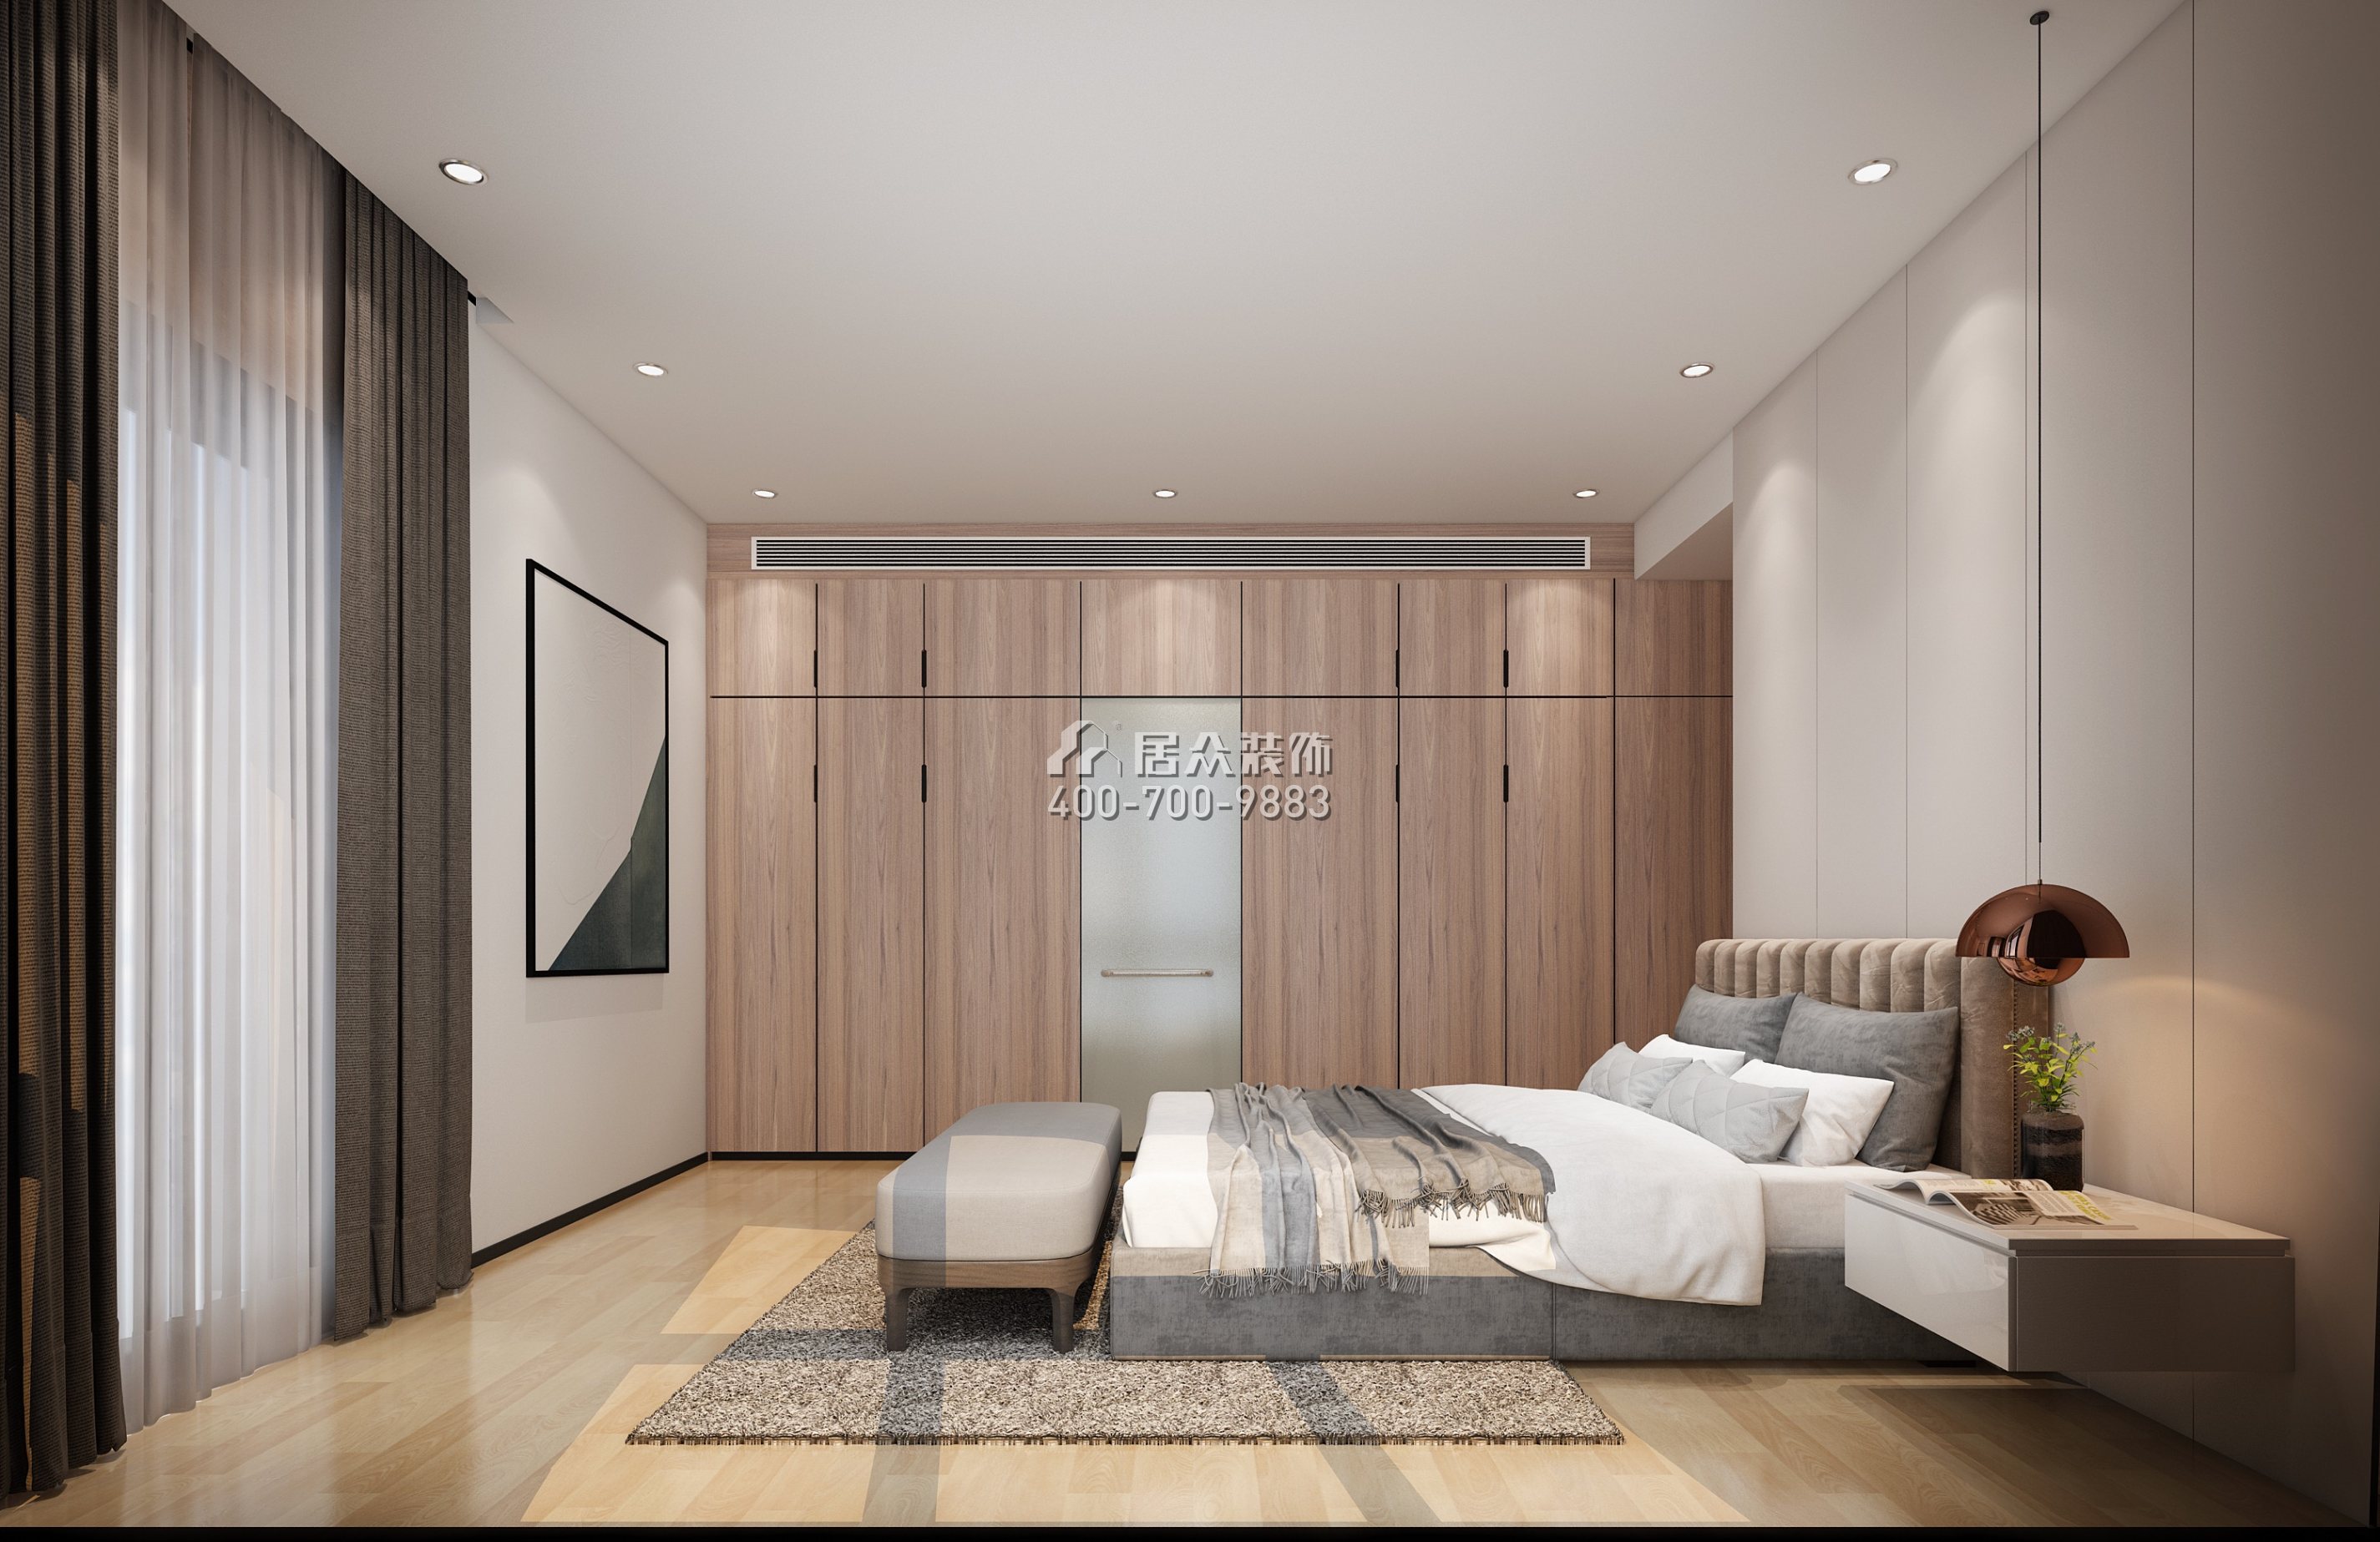 港丽豪园135平方米现代简约风格平层户型卧室装修效果图